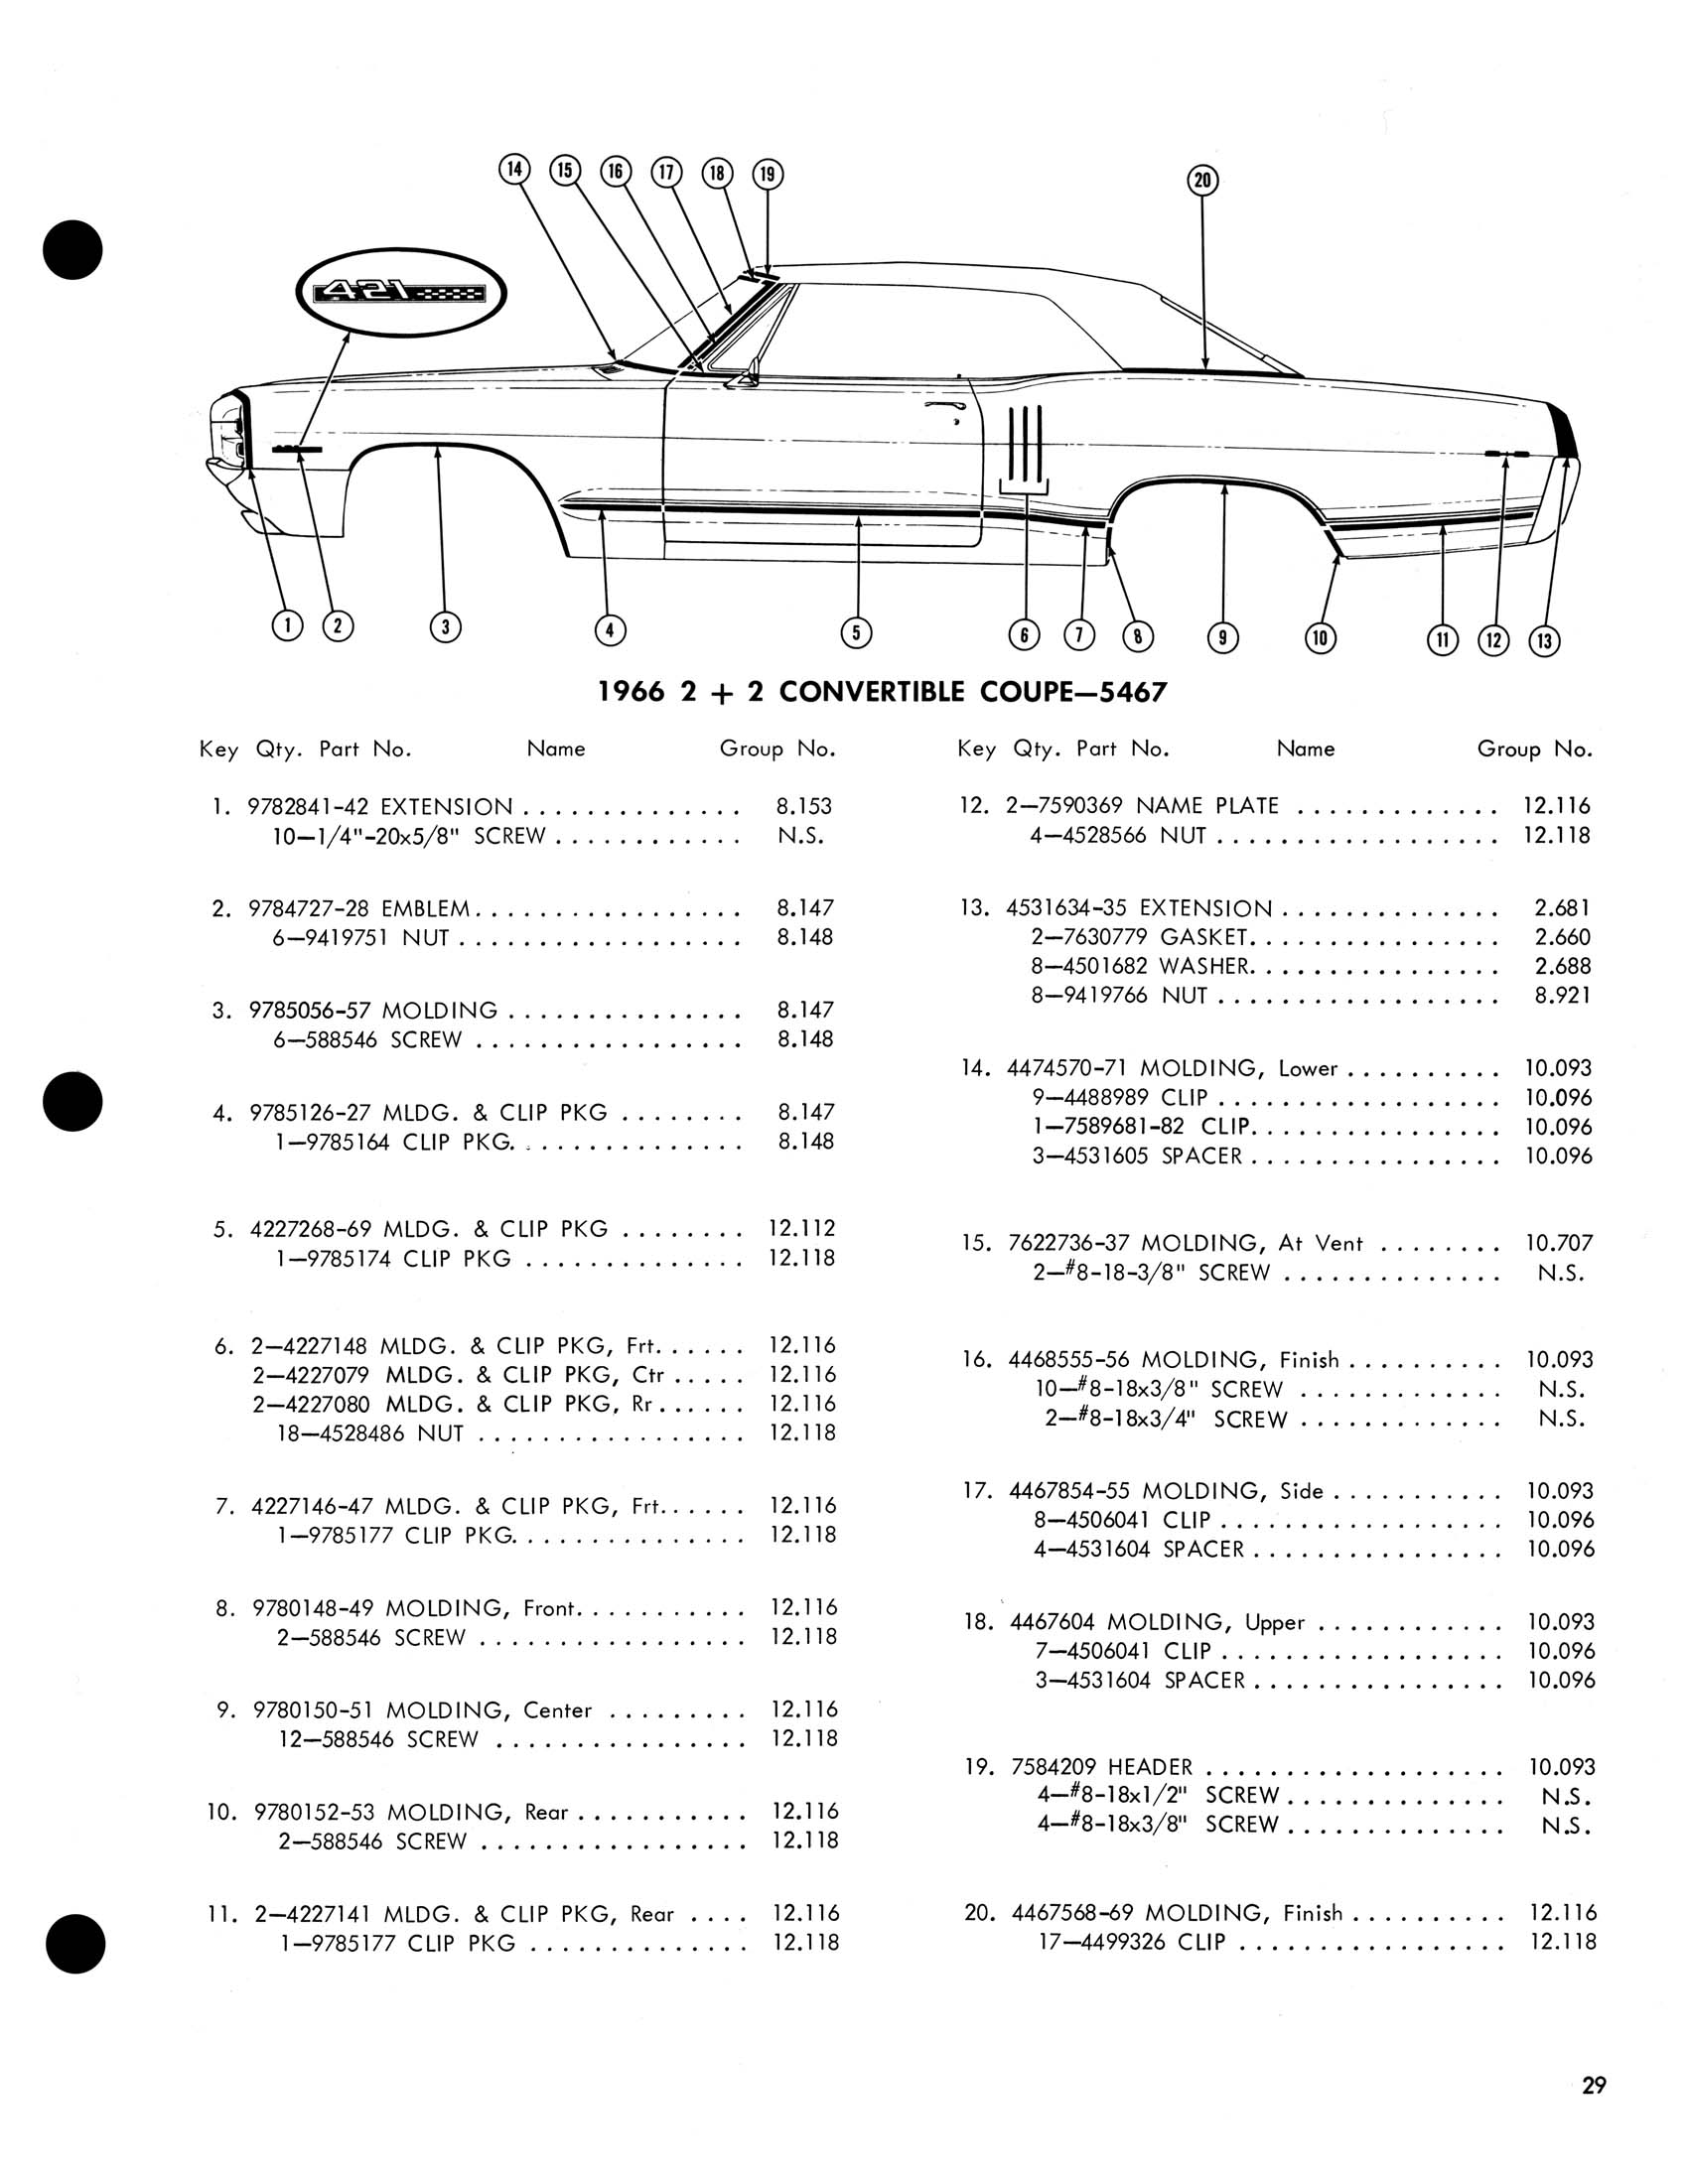 1966_Pontiac_Molding_and_Clip_Catalog-29